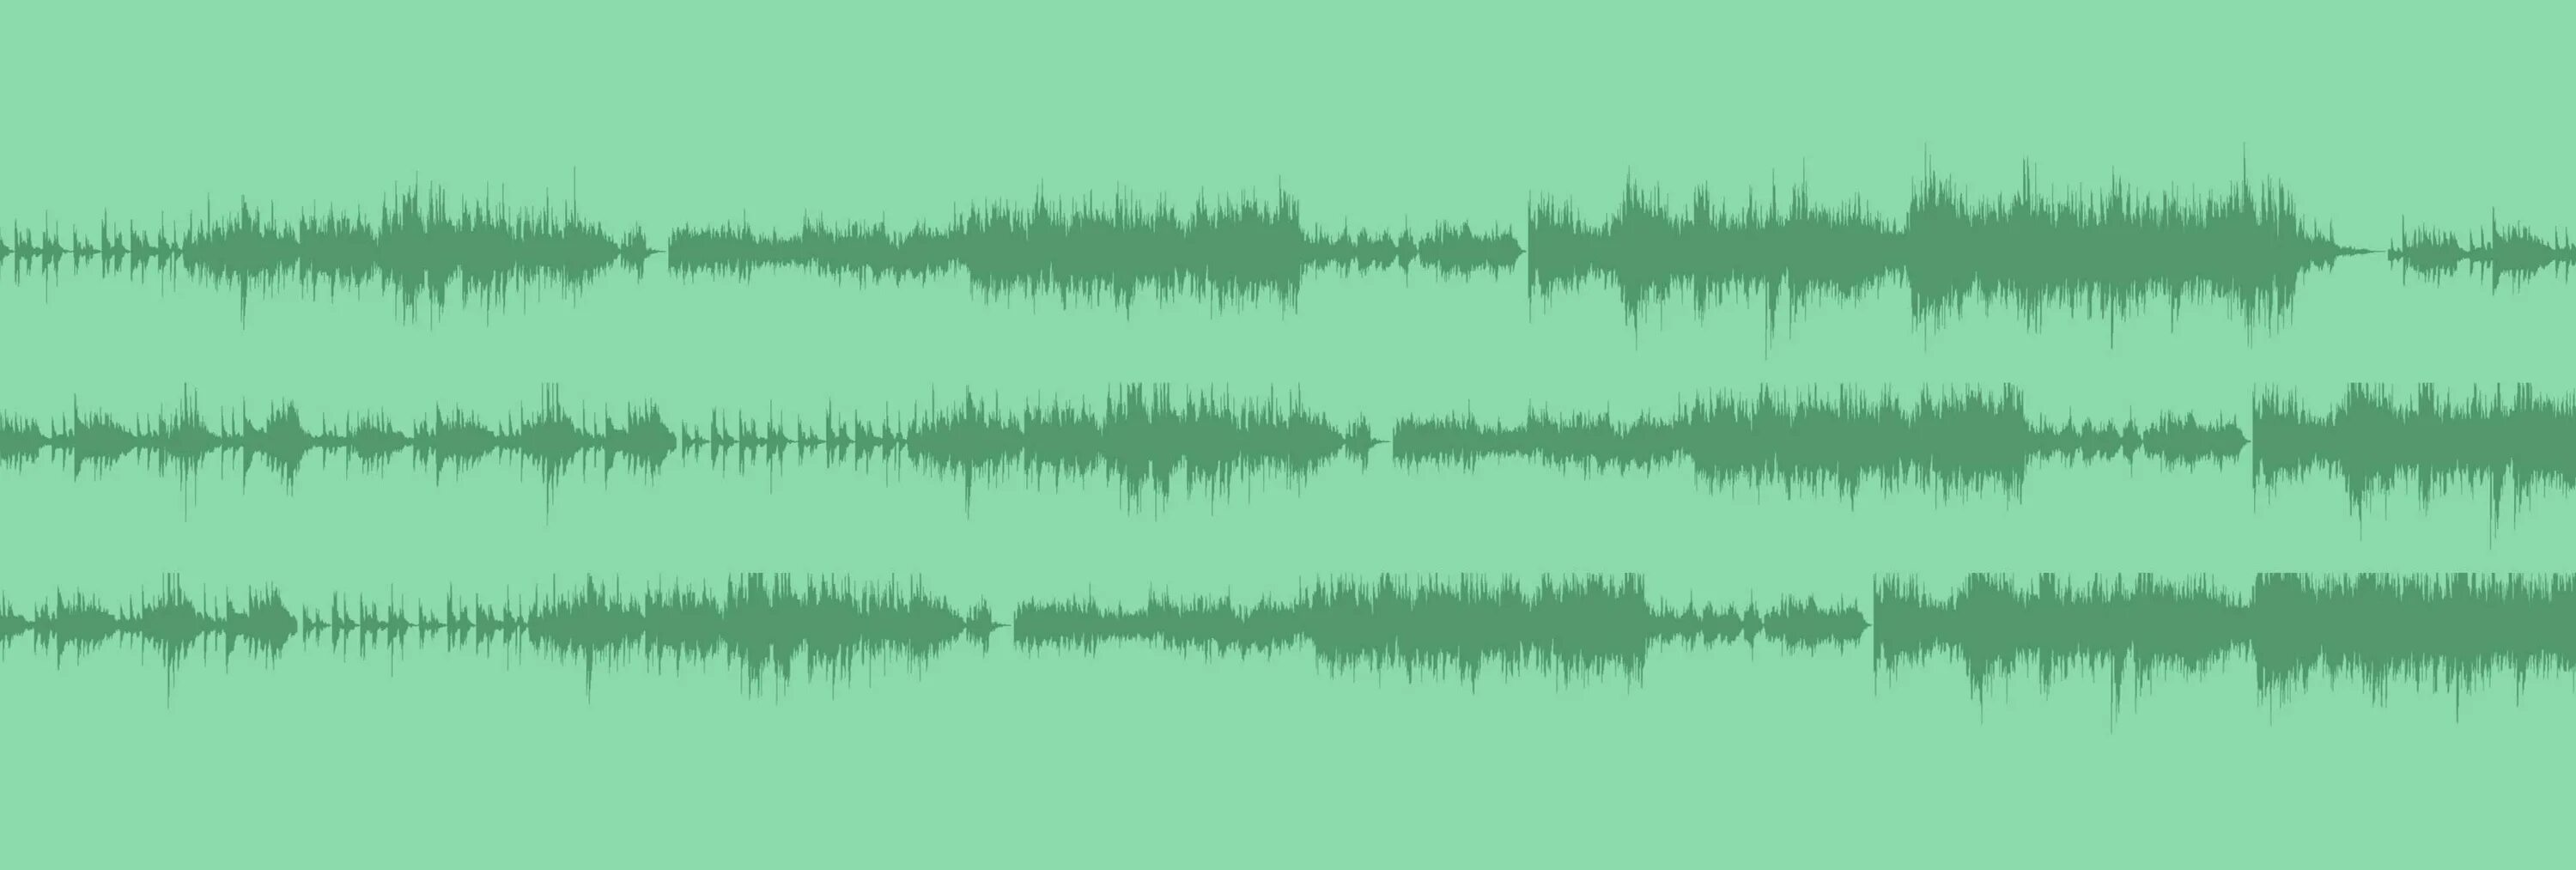 Дорожки obs. Звуковая дорожка. Звуковая аудиодорожка. Звуковые дорожки в Premier Pro. Звуковая дорожка вектор.